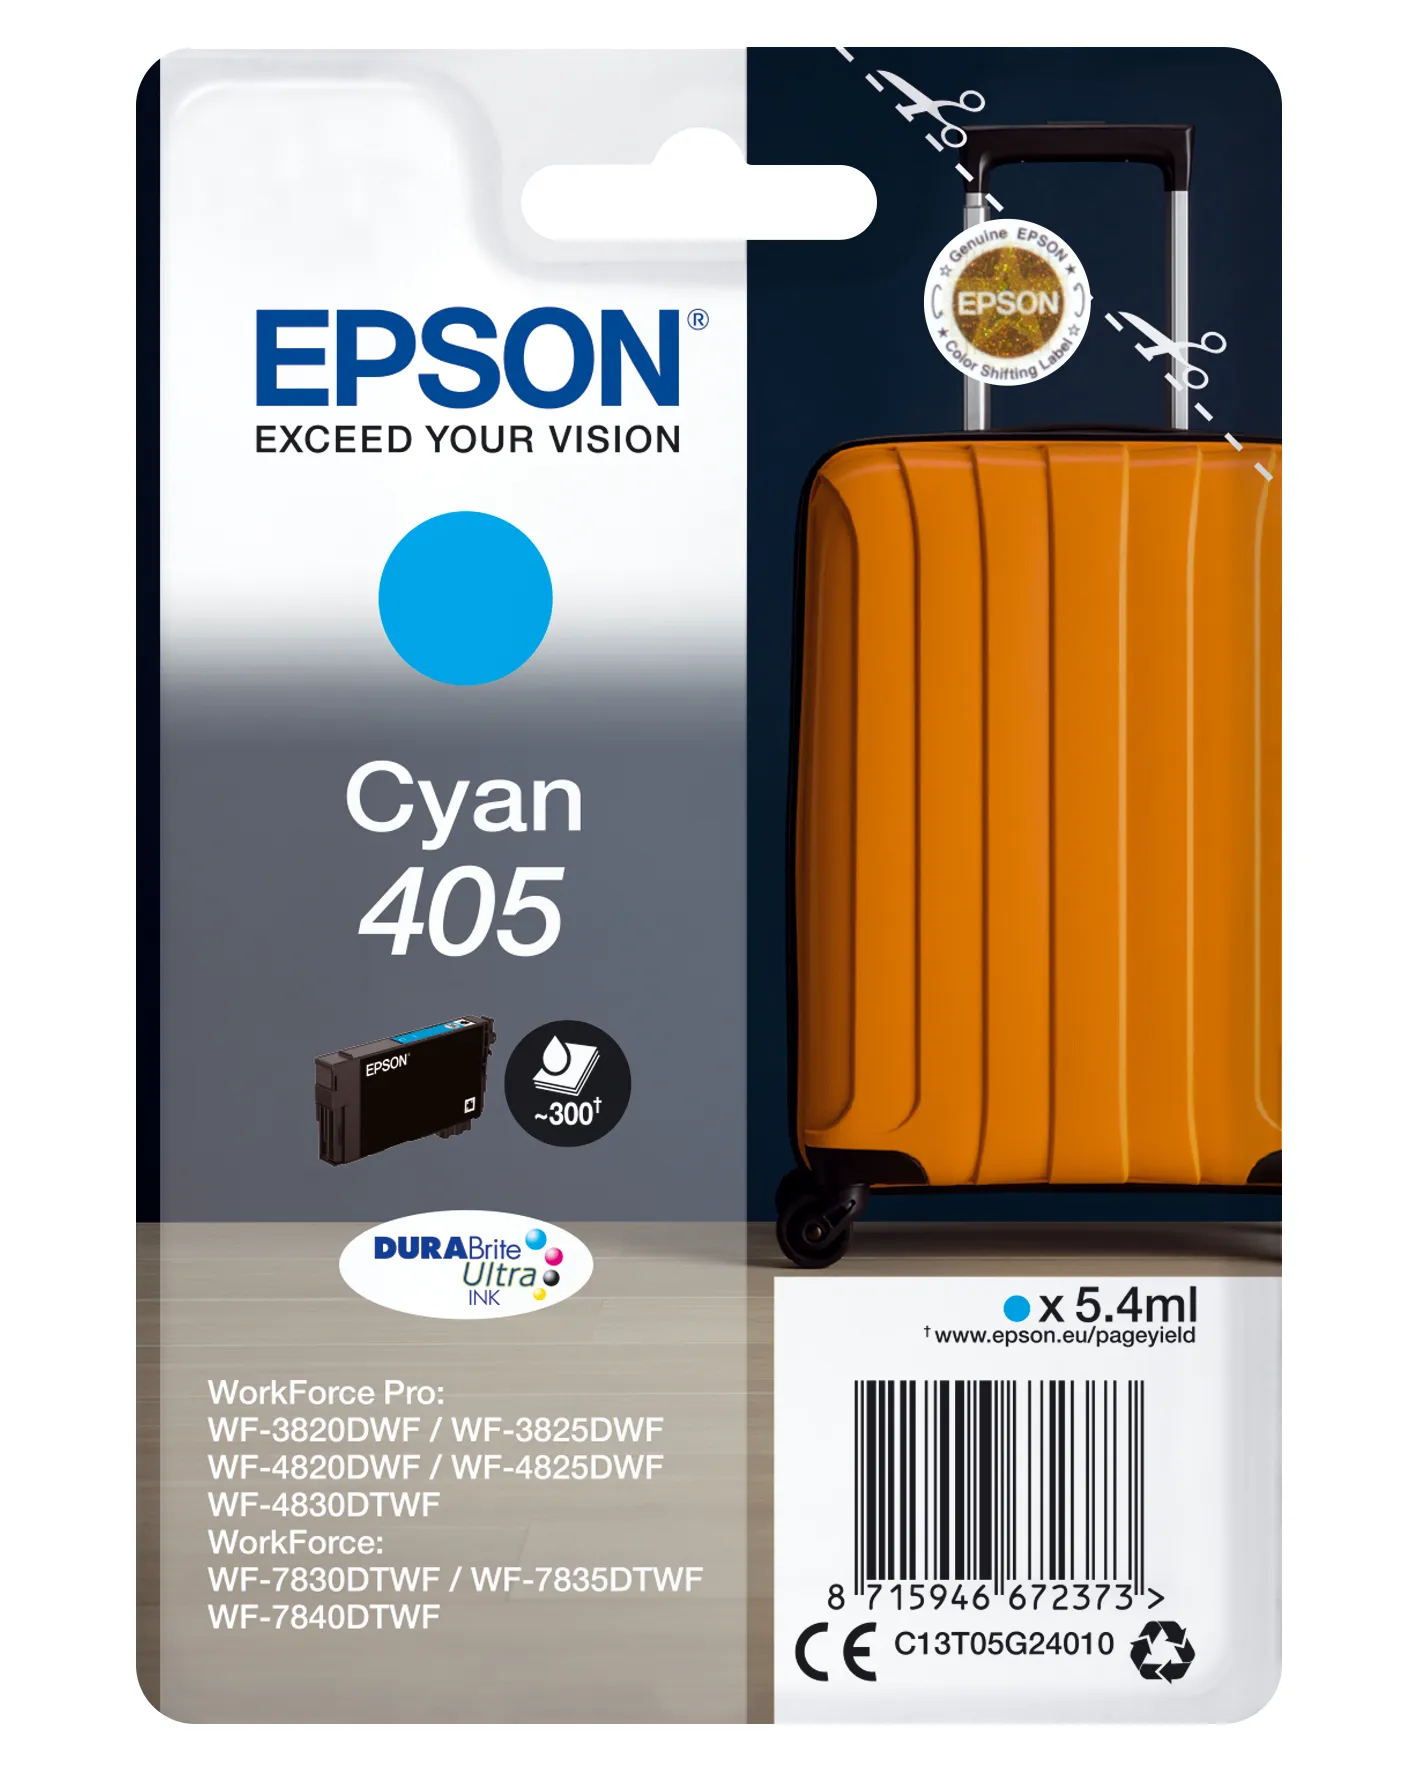 Achat Epson Singlepack Cyan 405 DURABrite Ultra Ink sur hello RSE - visuel 3